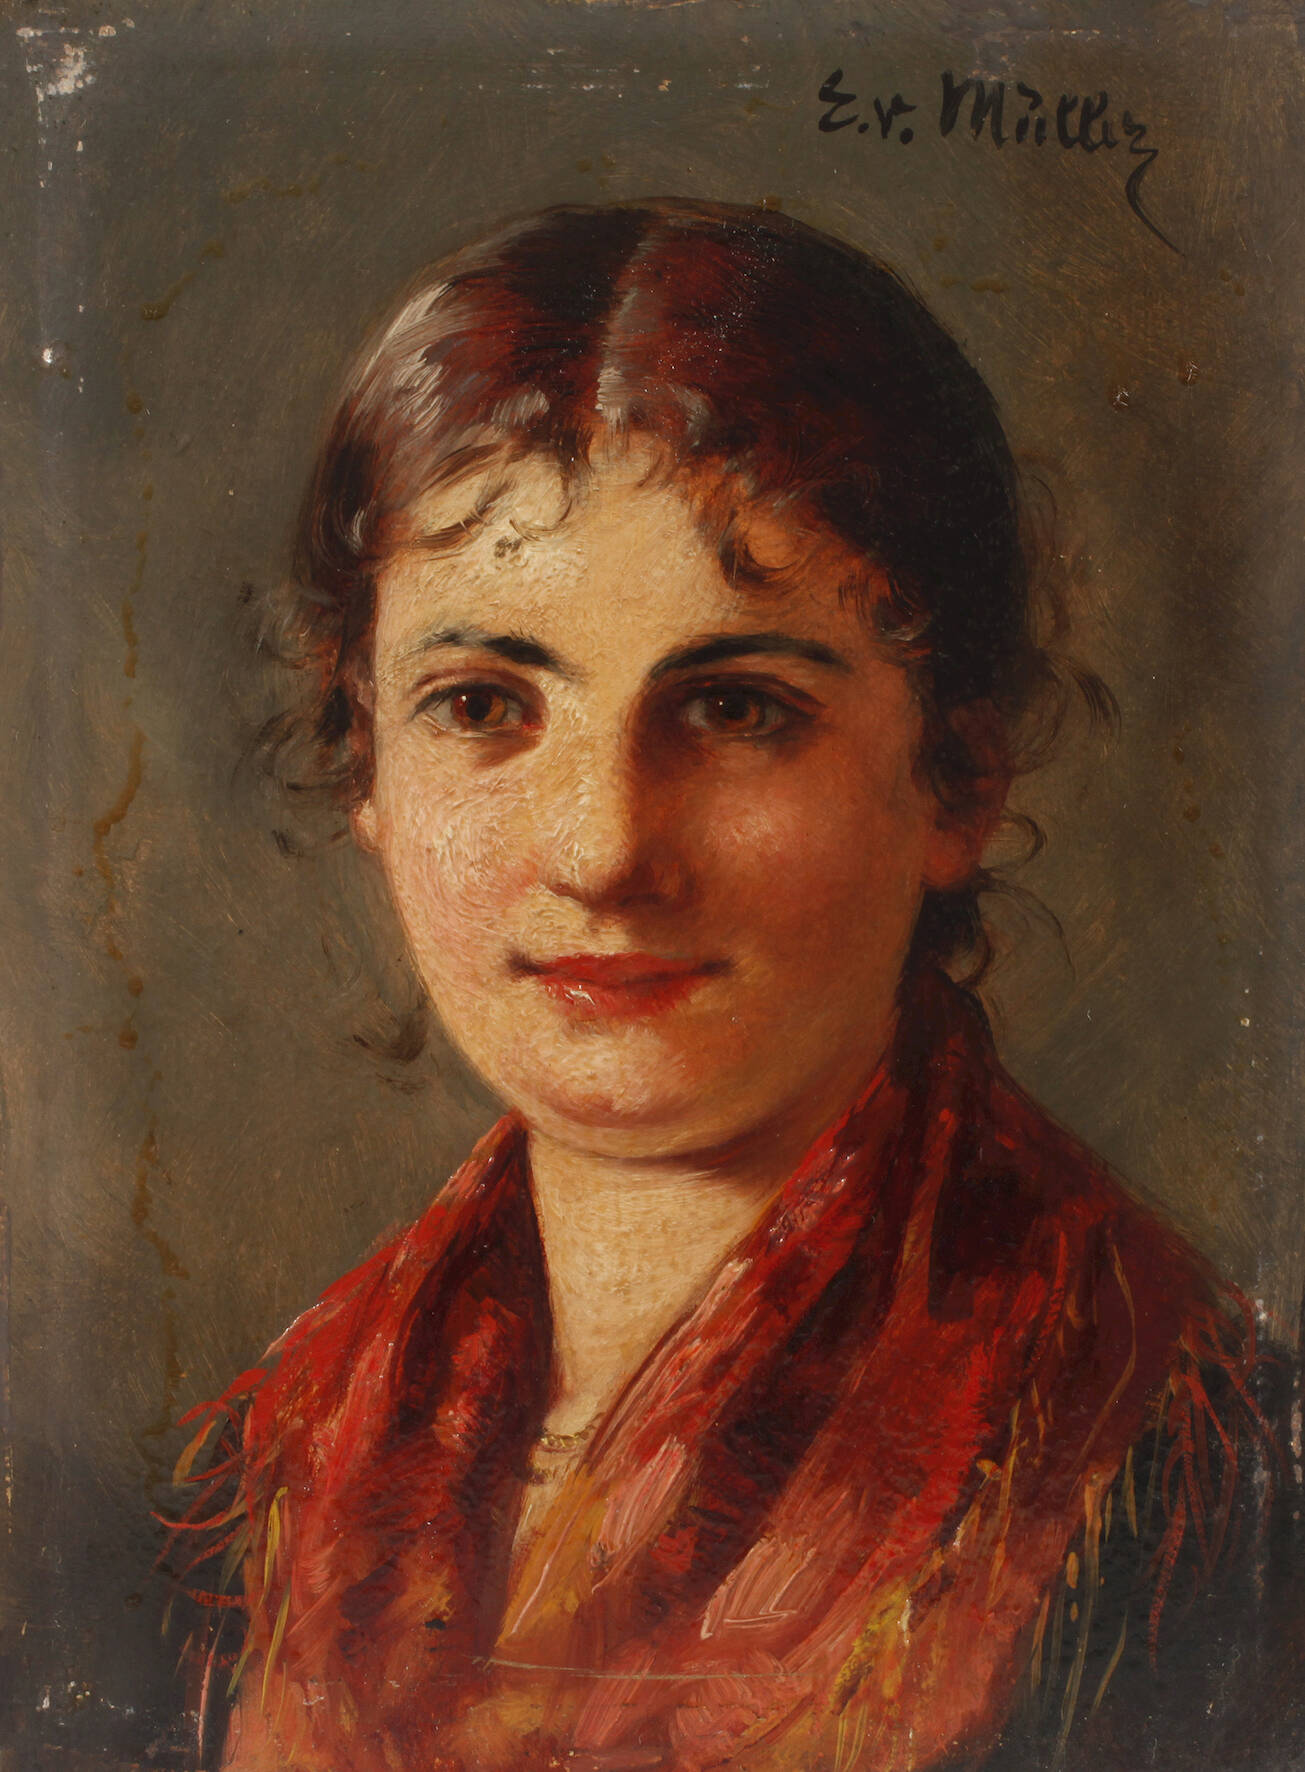 Emma von Müller, Portrait einer jungen Frau